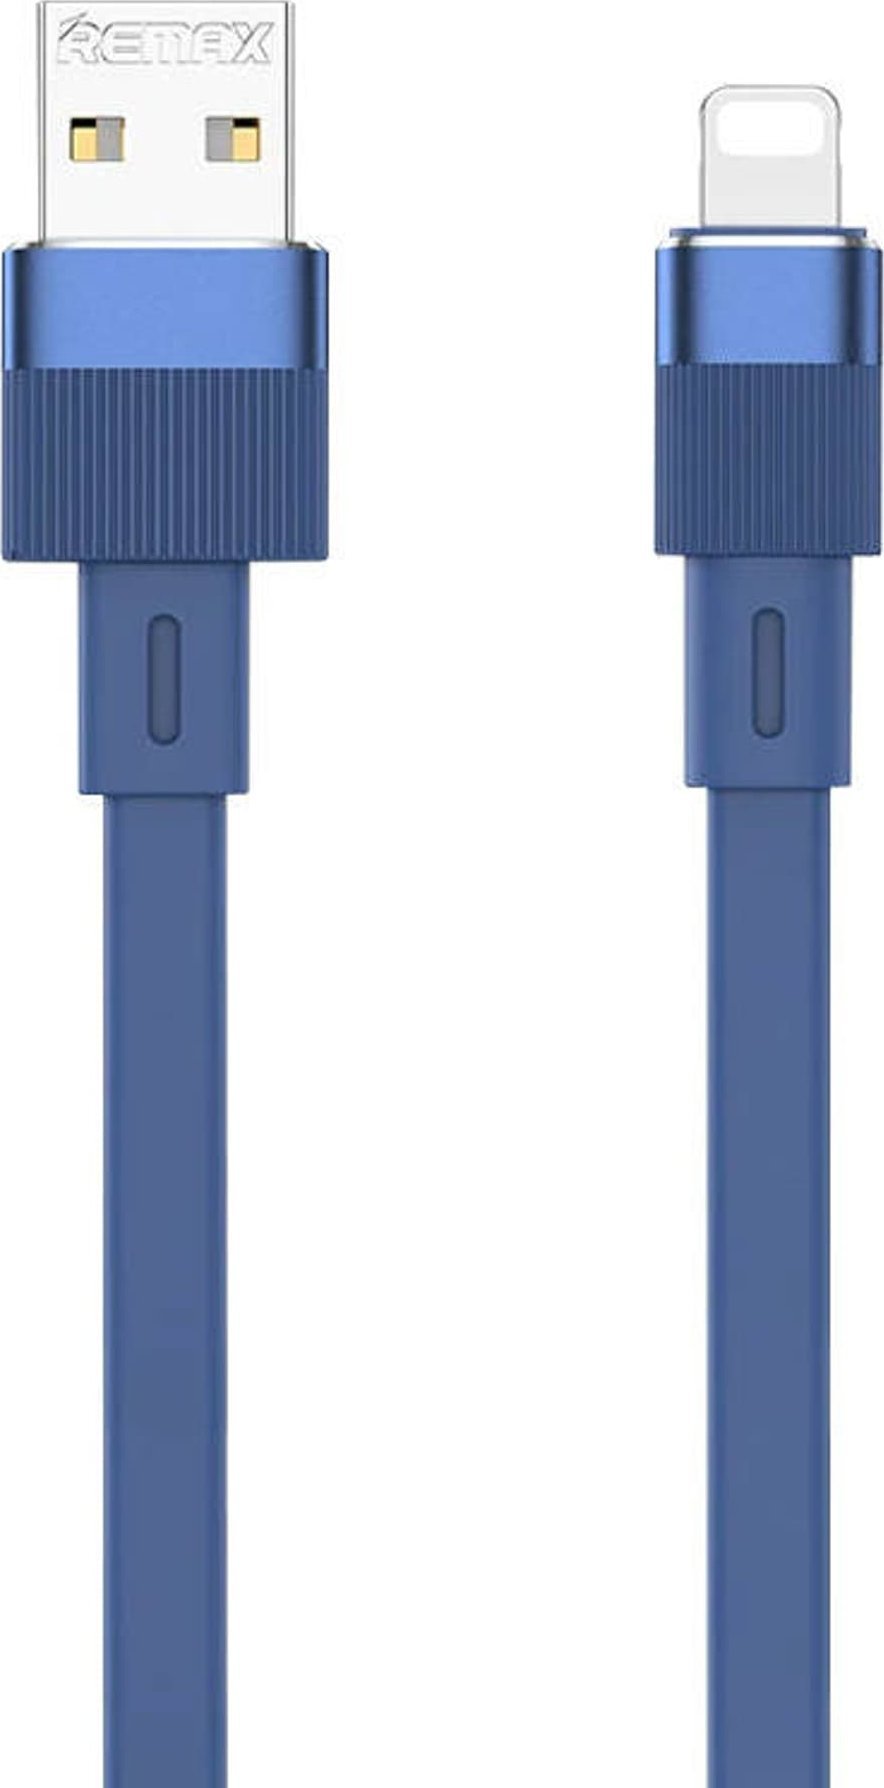 Cablu USB Remax Cablu USB Remax Flushing la Lightning, RC-C001, 1 m, (albastru)